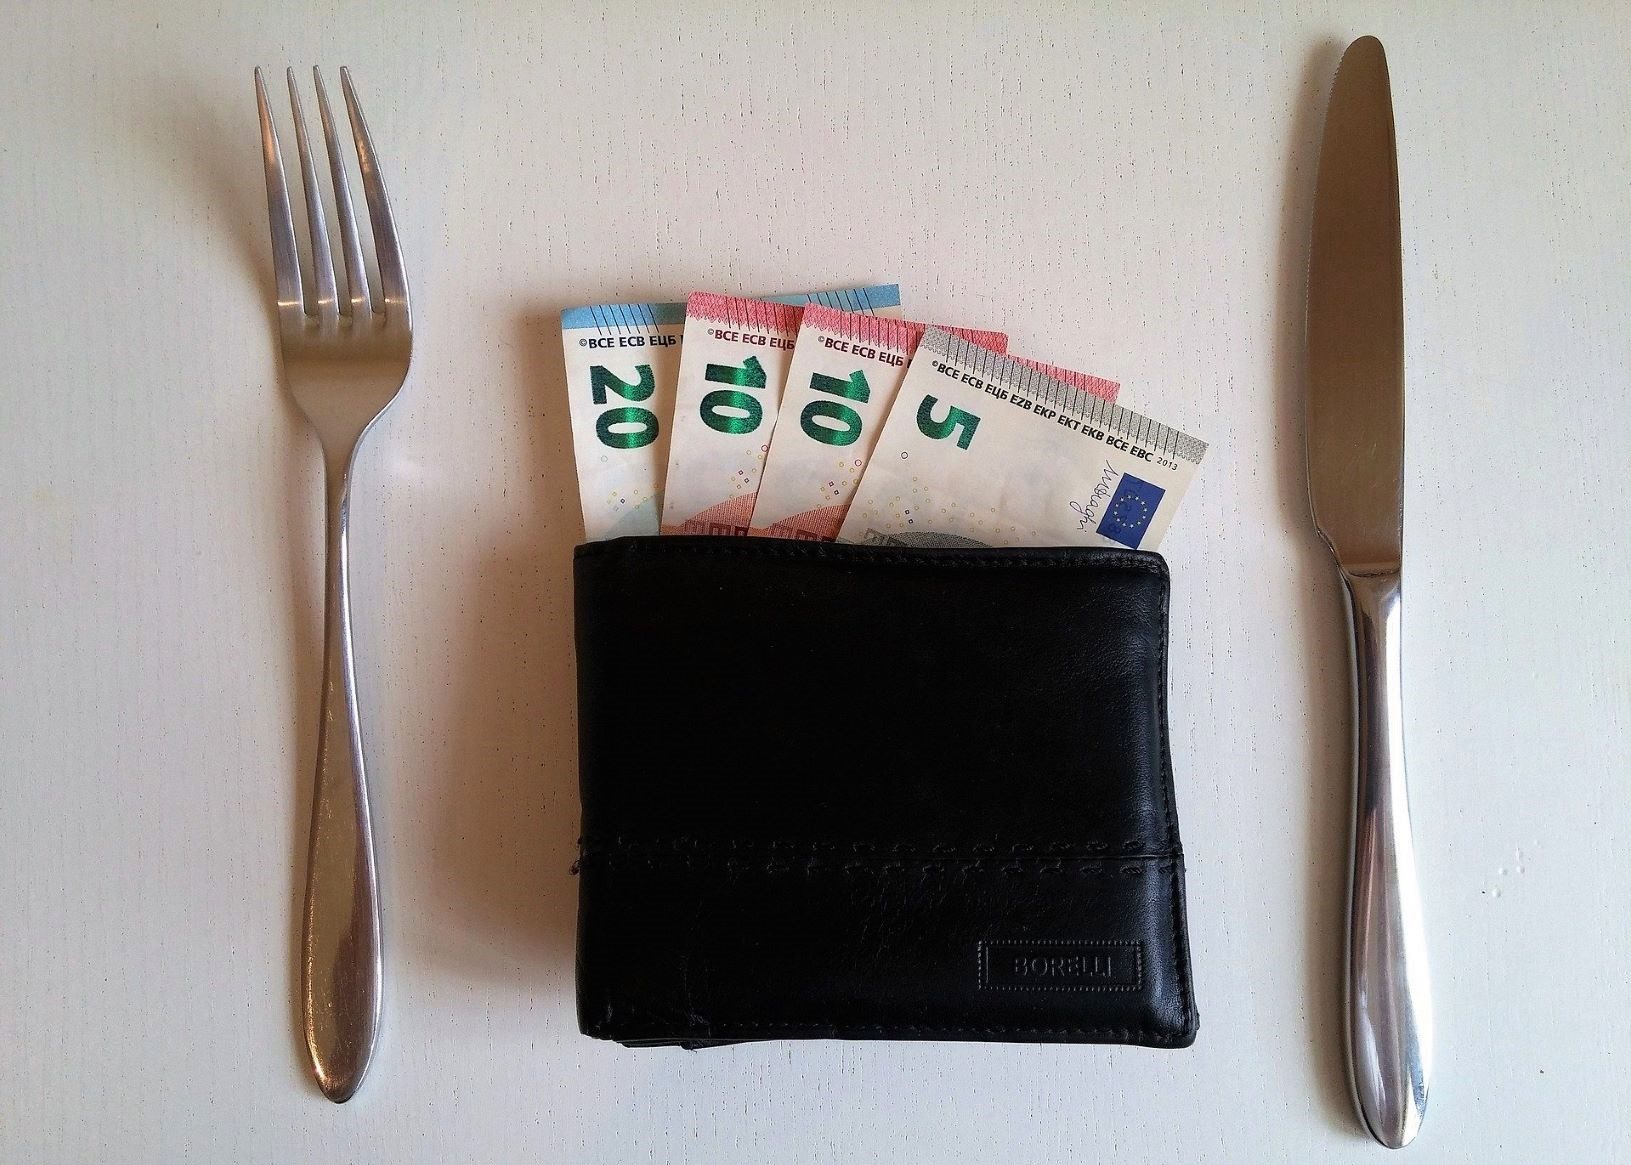 Geld en loon voor eten - Foto: Peter Facebook (Pixabay)